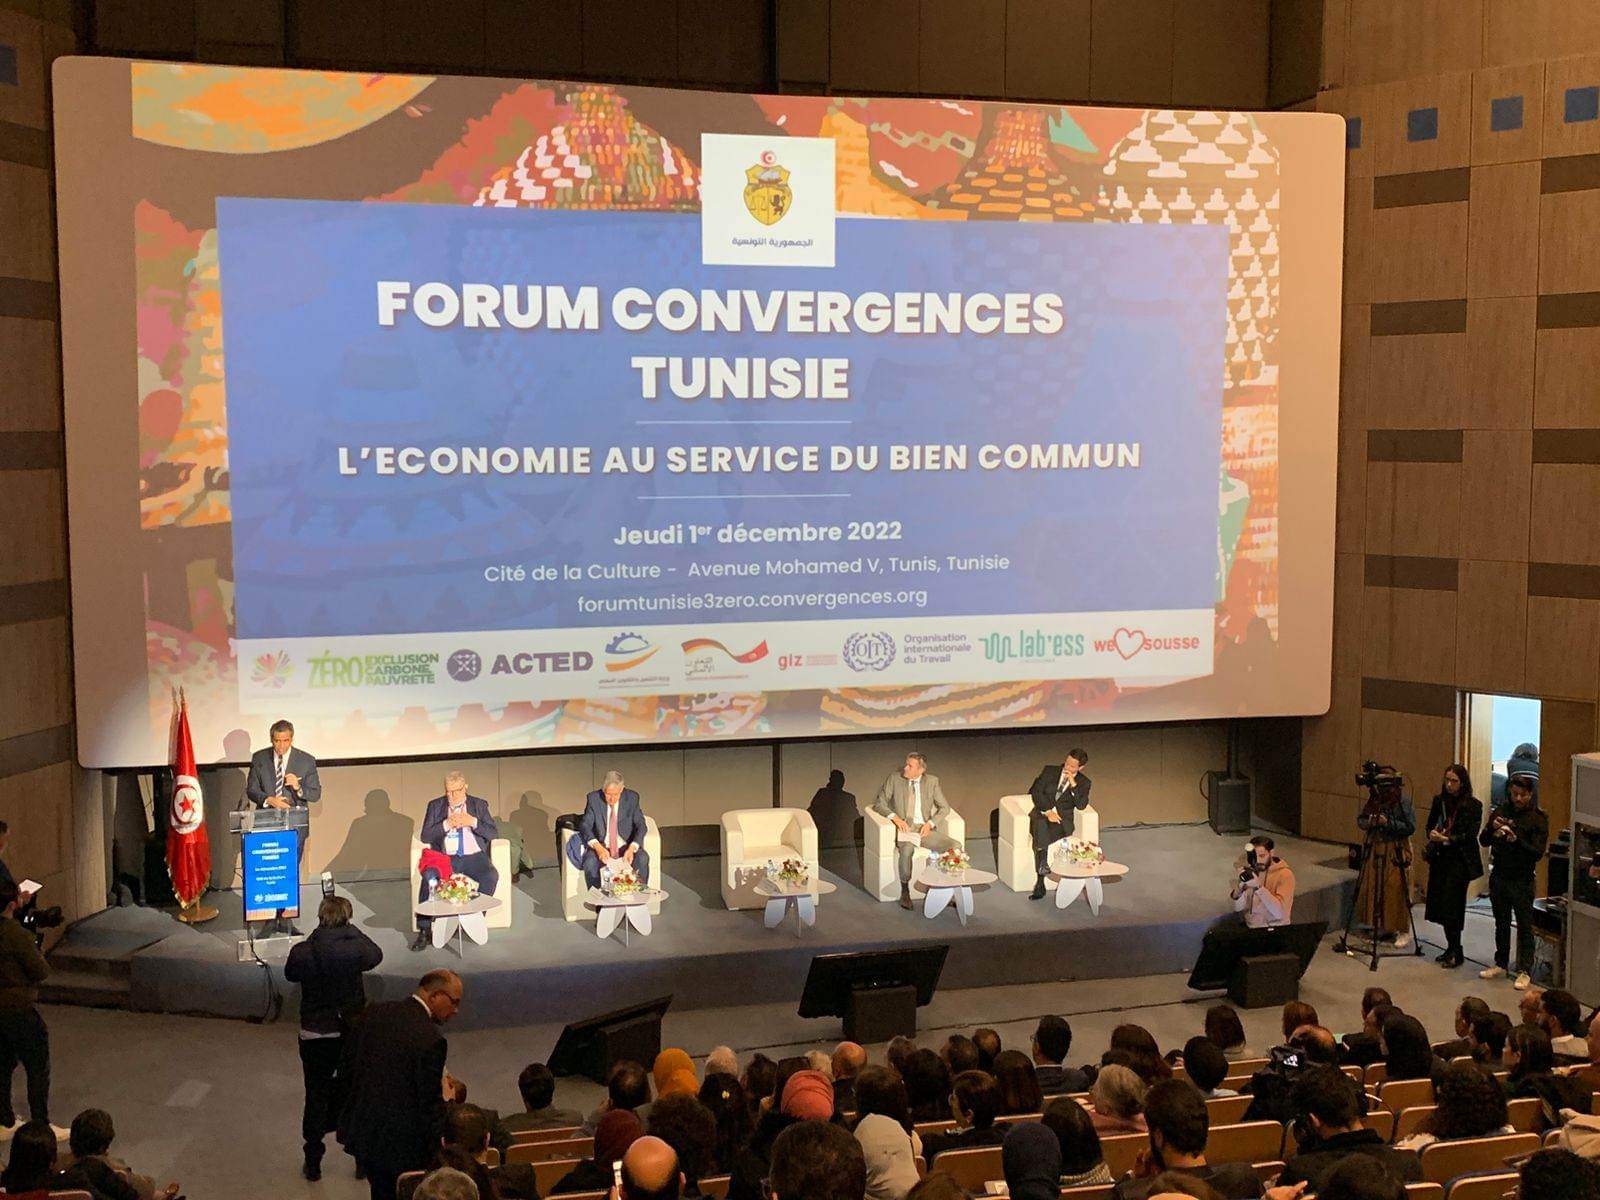  النسخة الرابعة لمنتدى تونس:  "الاقتصاد في خدمة الصالح العام"